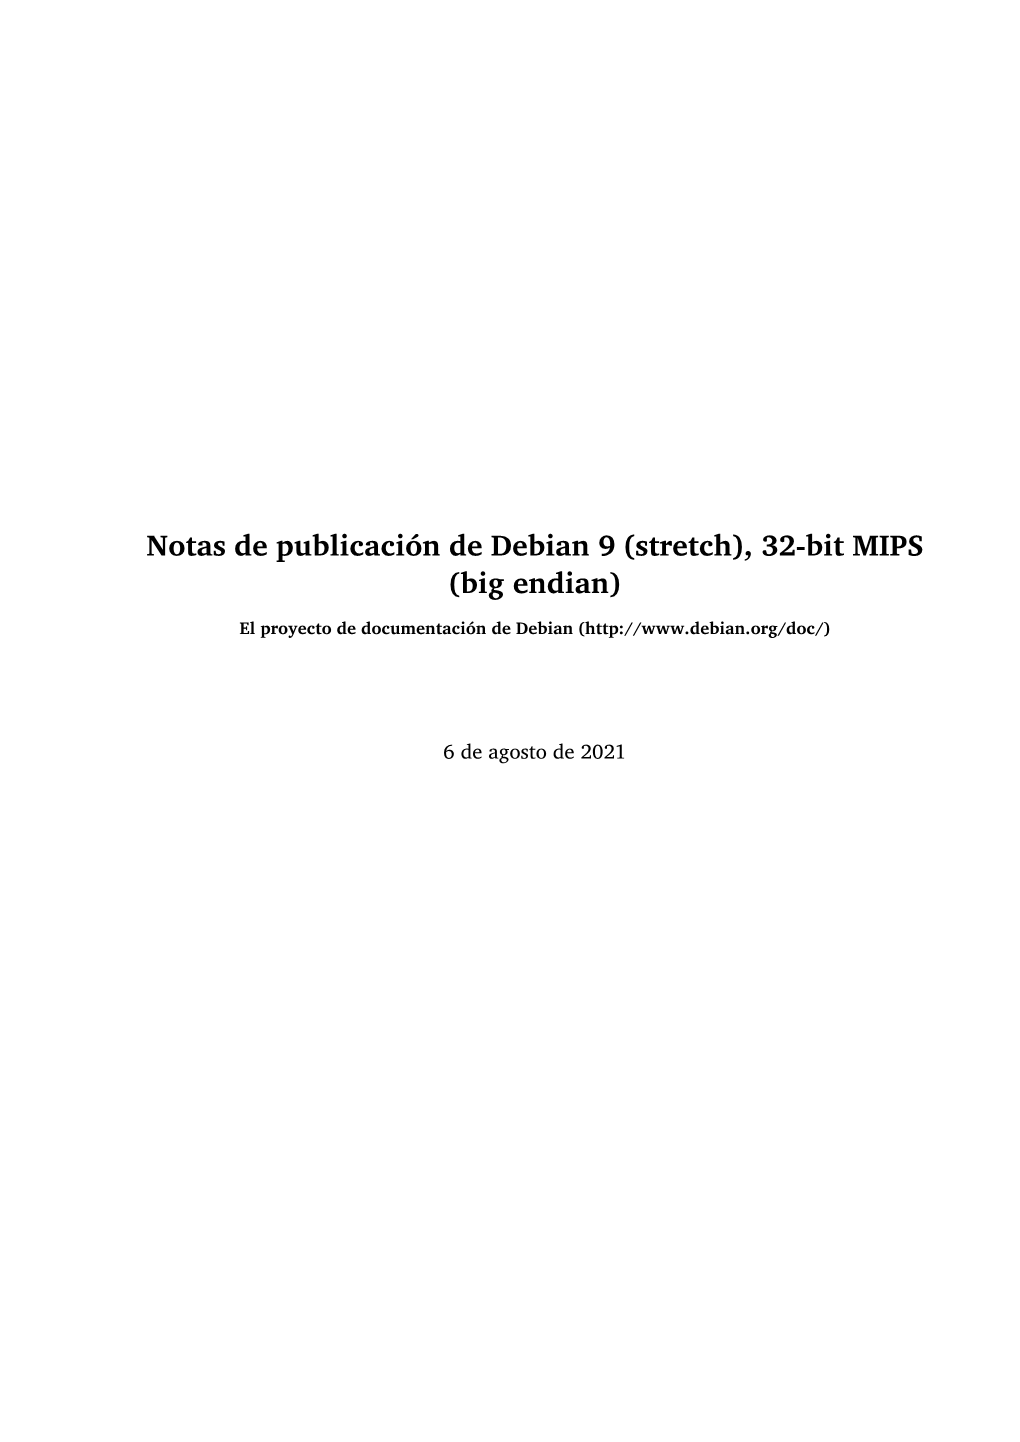 Notas De Publicación De Debian 9 (Stretch), 32-Bit MIPS (Big Endian)